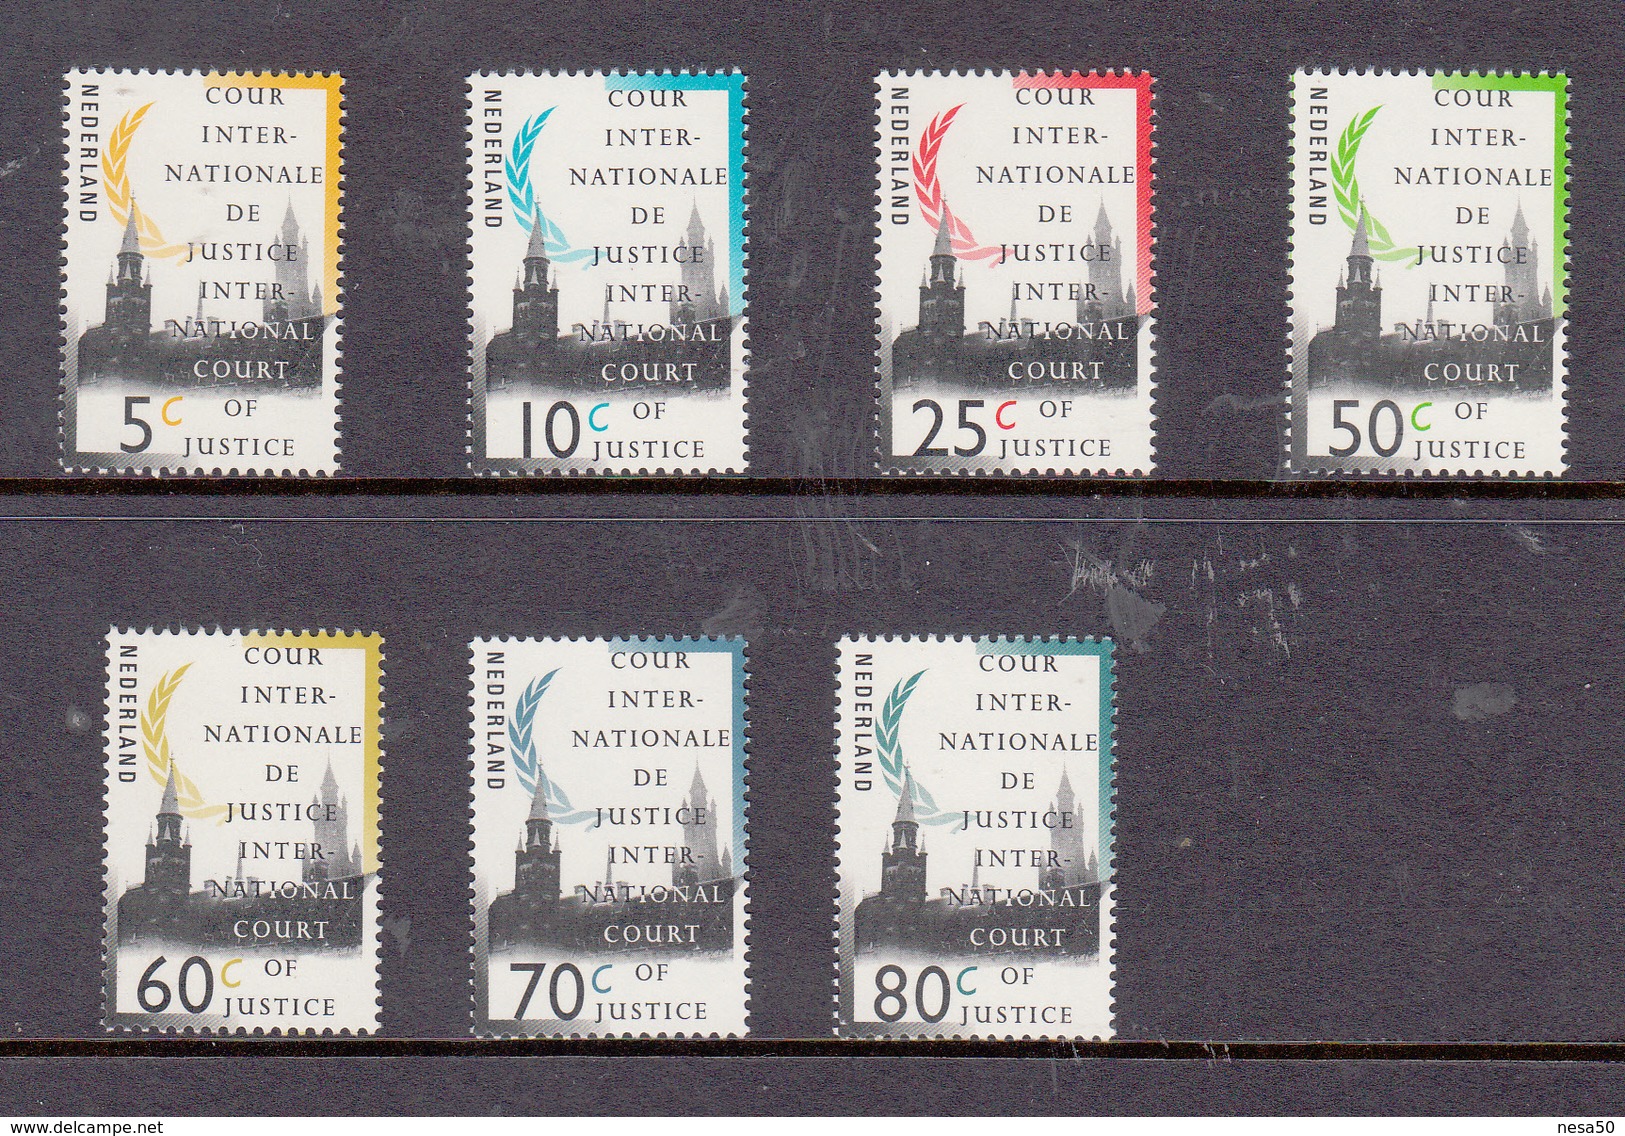 Nederland 1989 Nr D44 +D45+D46+D47+D49+D51+D53 Dienstzegels Cour Intern. De Justitie  Postfris - Service